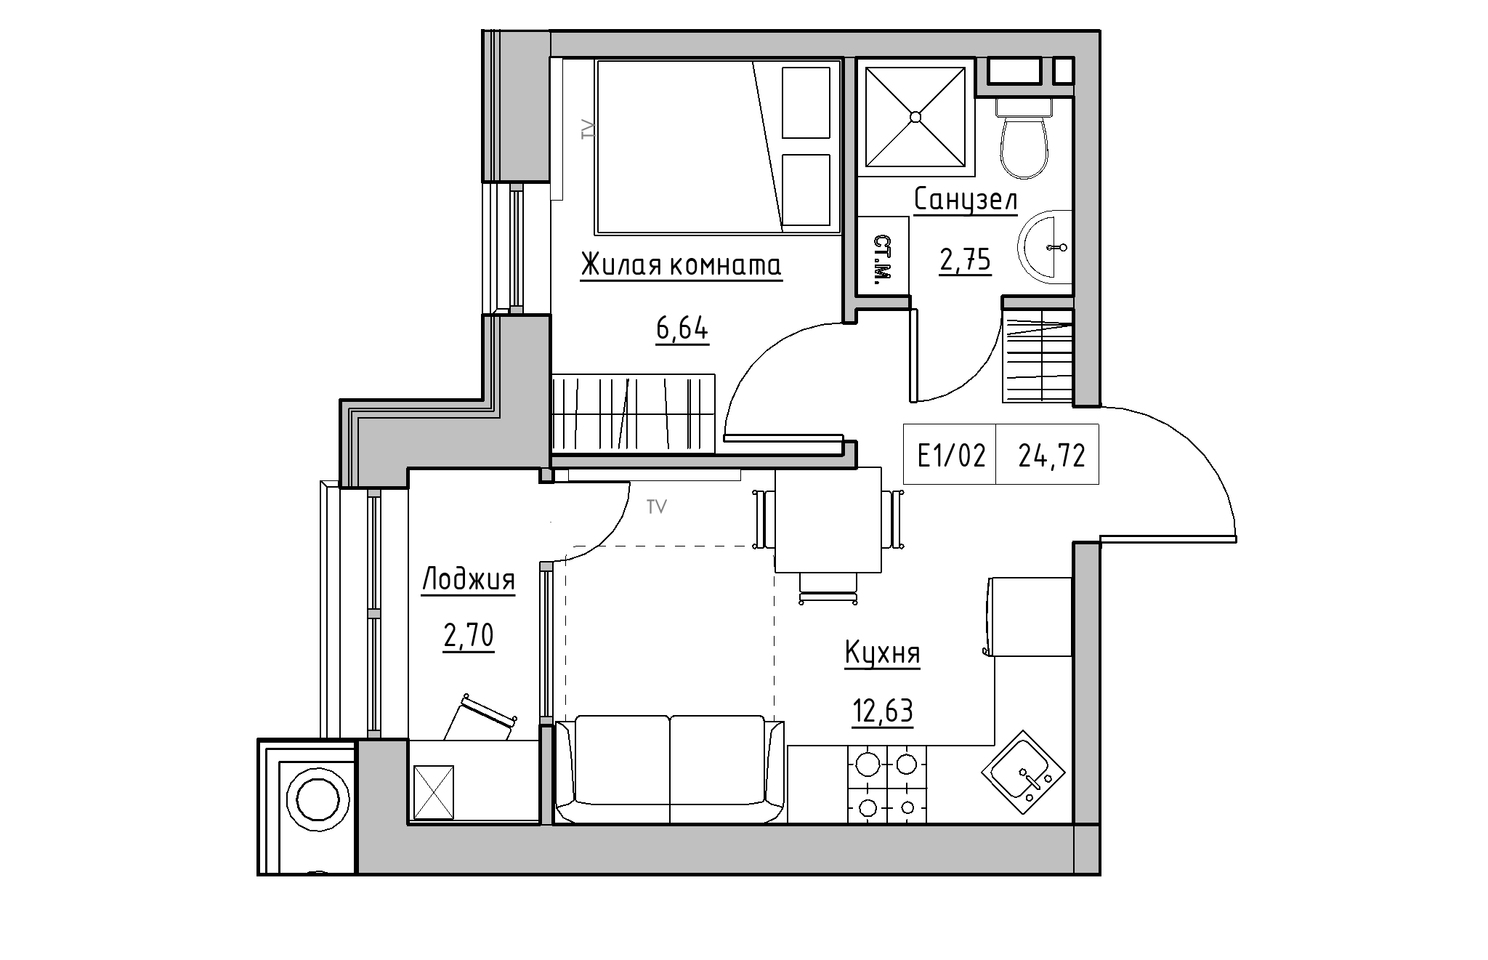 Планування 1-к квартира площею 24.72м2, KS-010-04/0013.